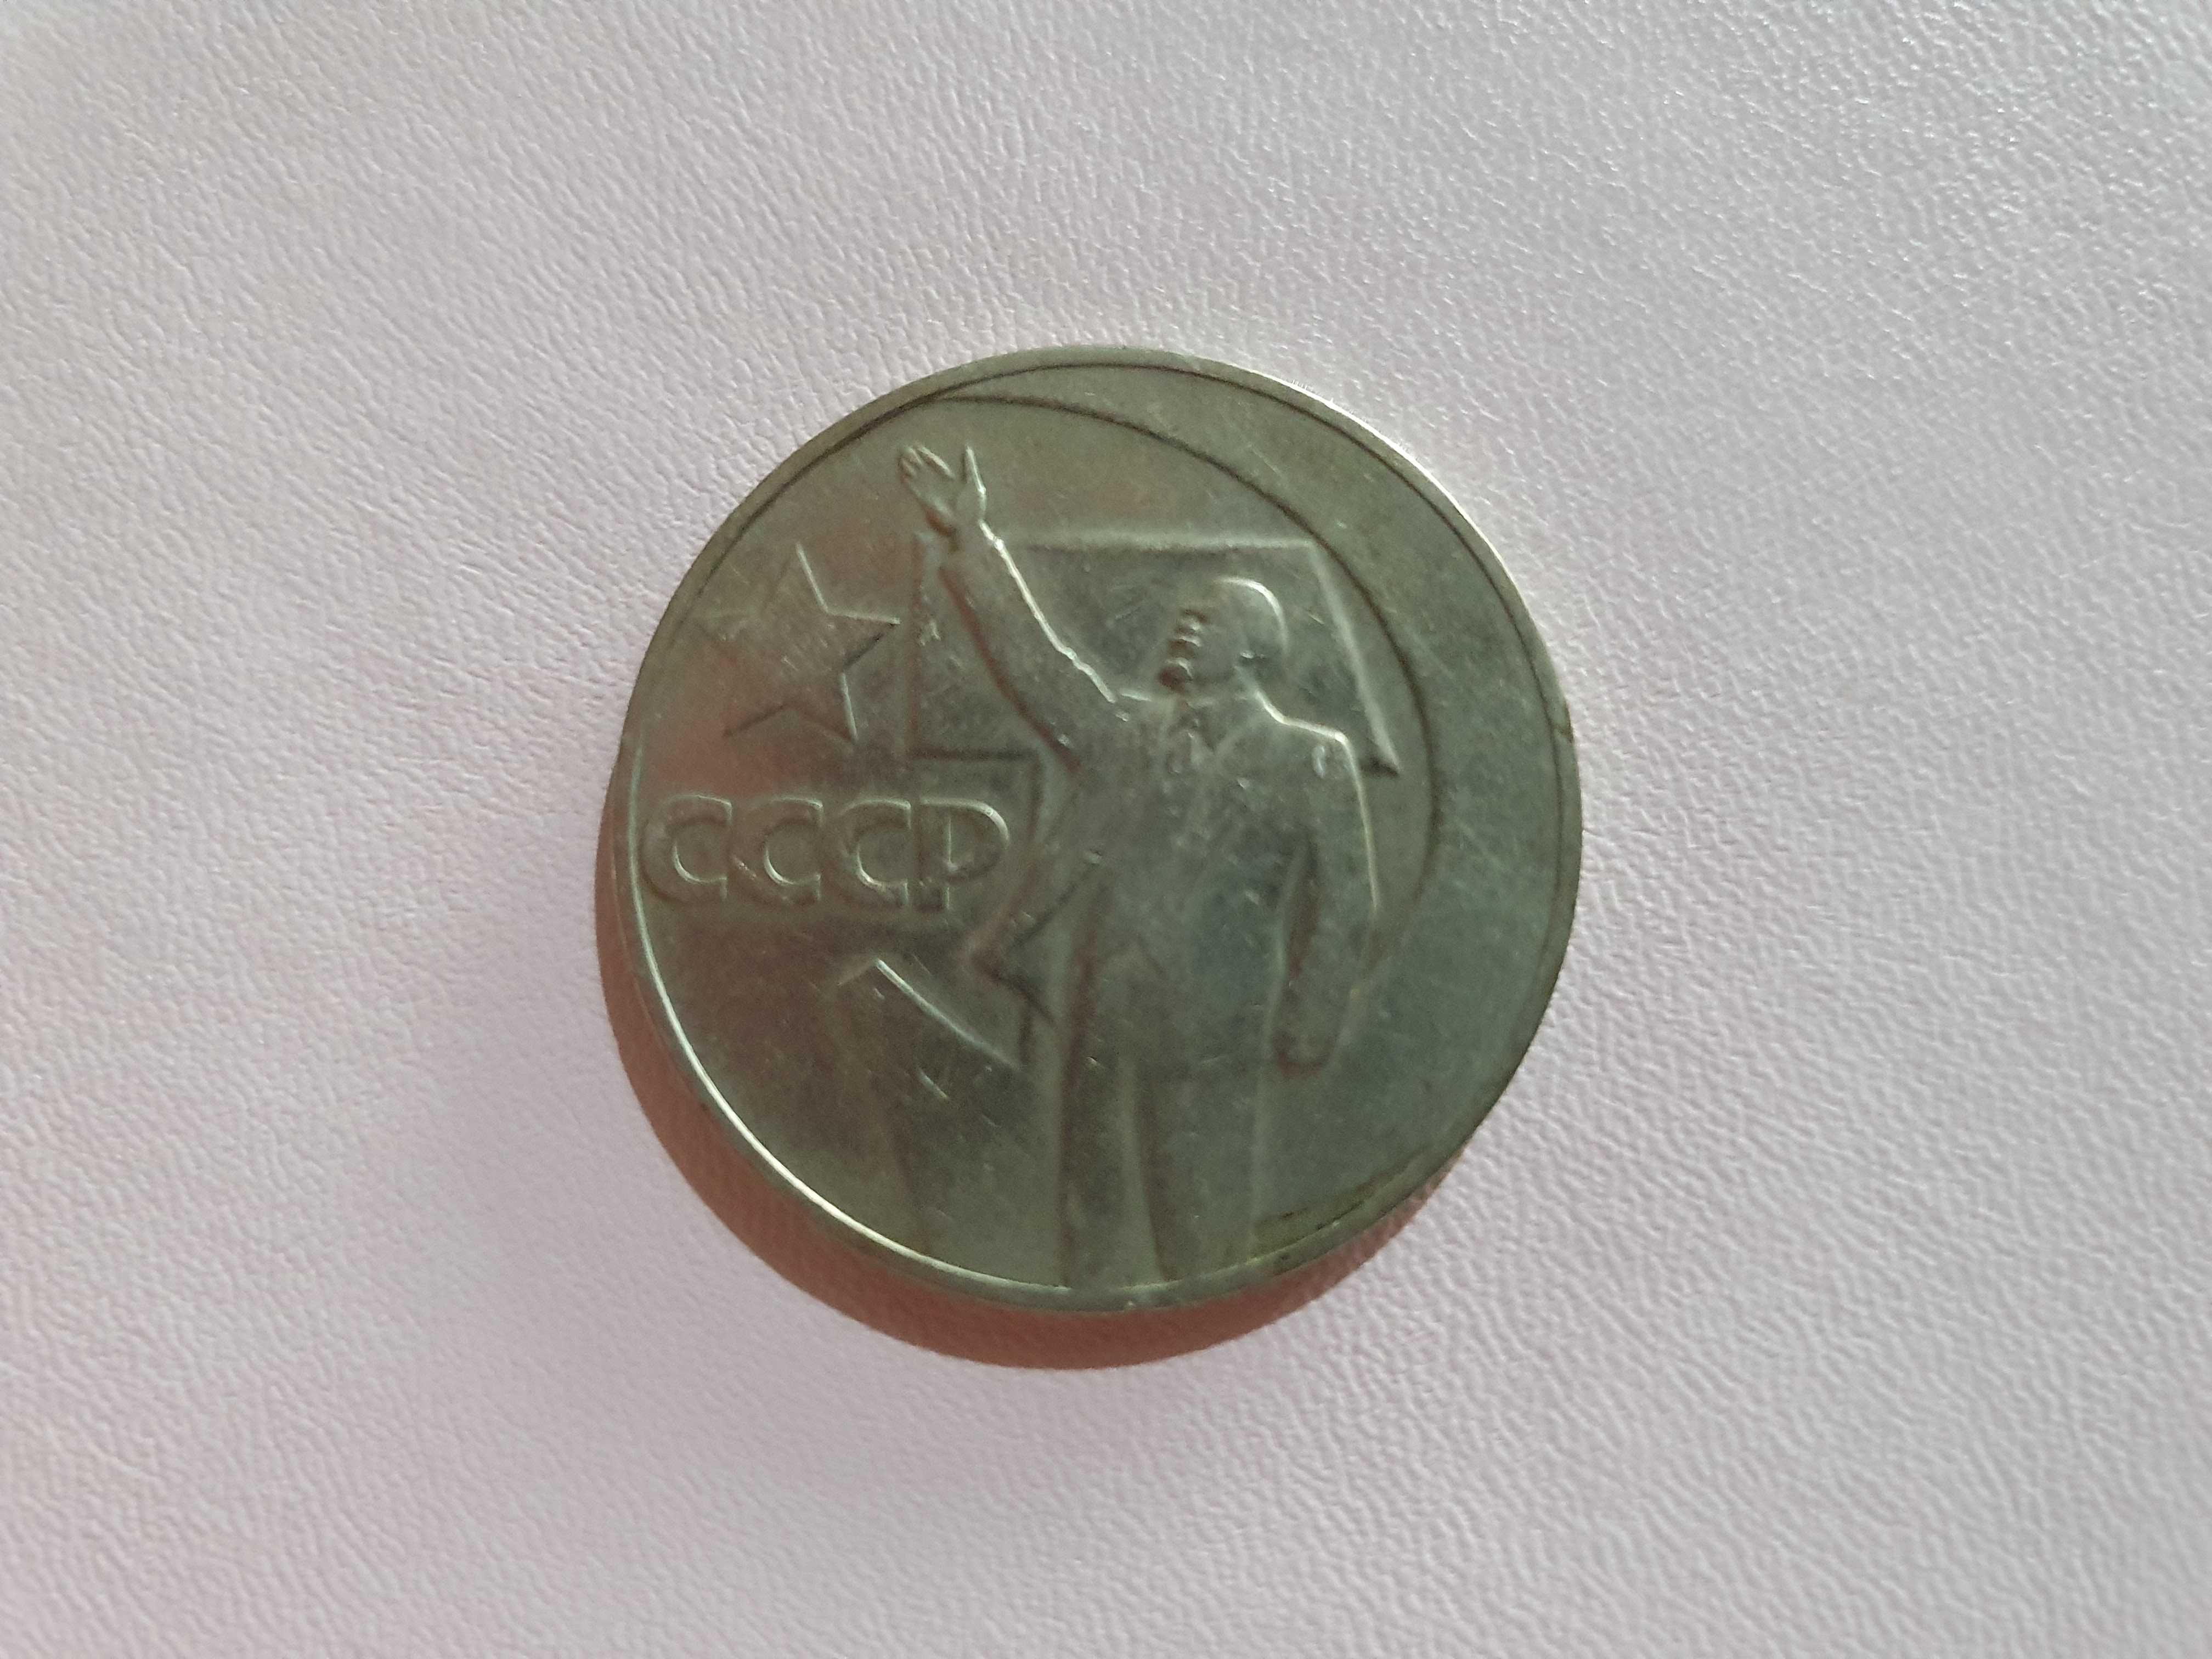 Monedă de 1 rublă rusească de argint 1917 - 1967 cu Lenin